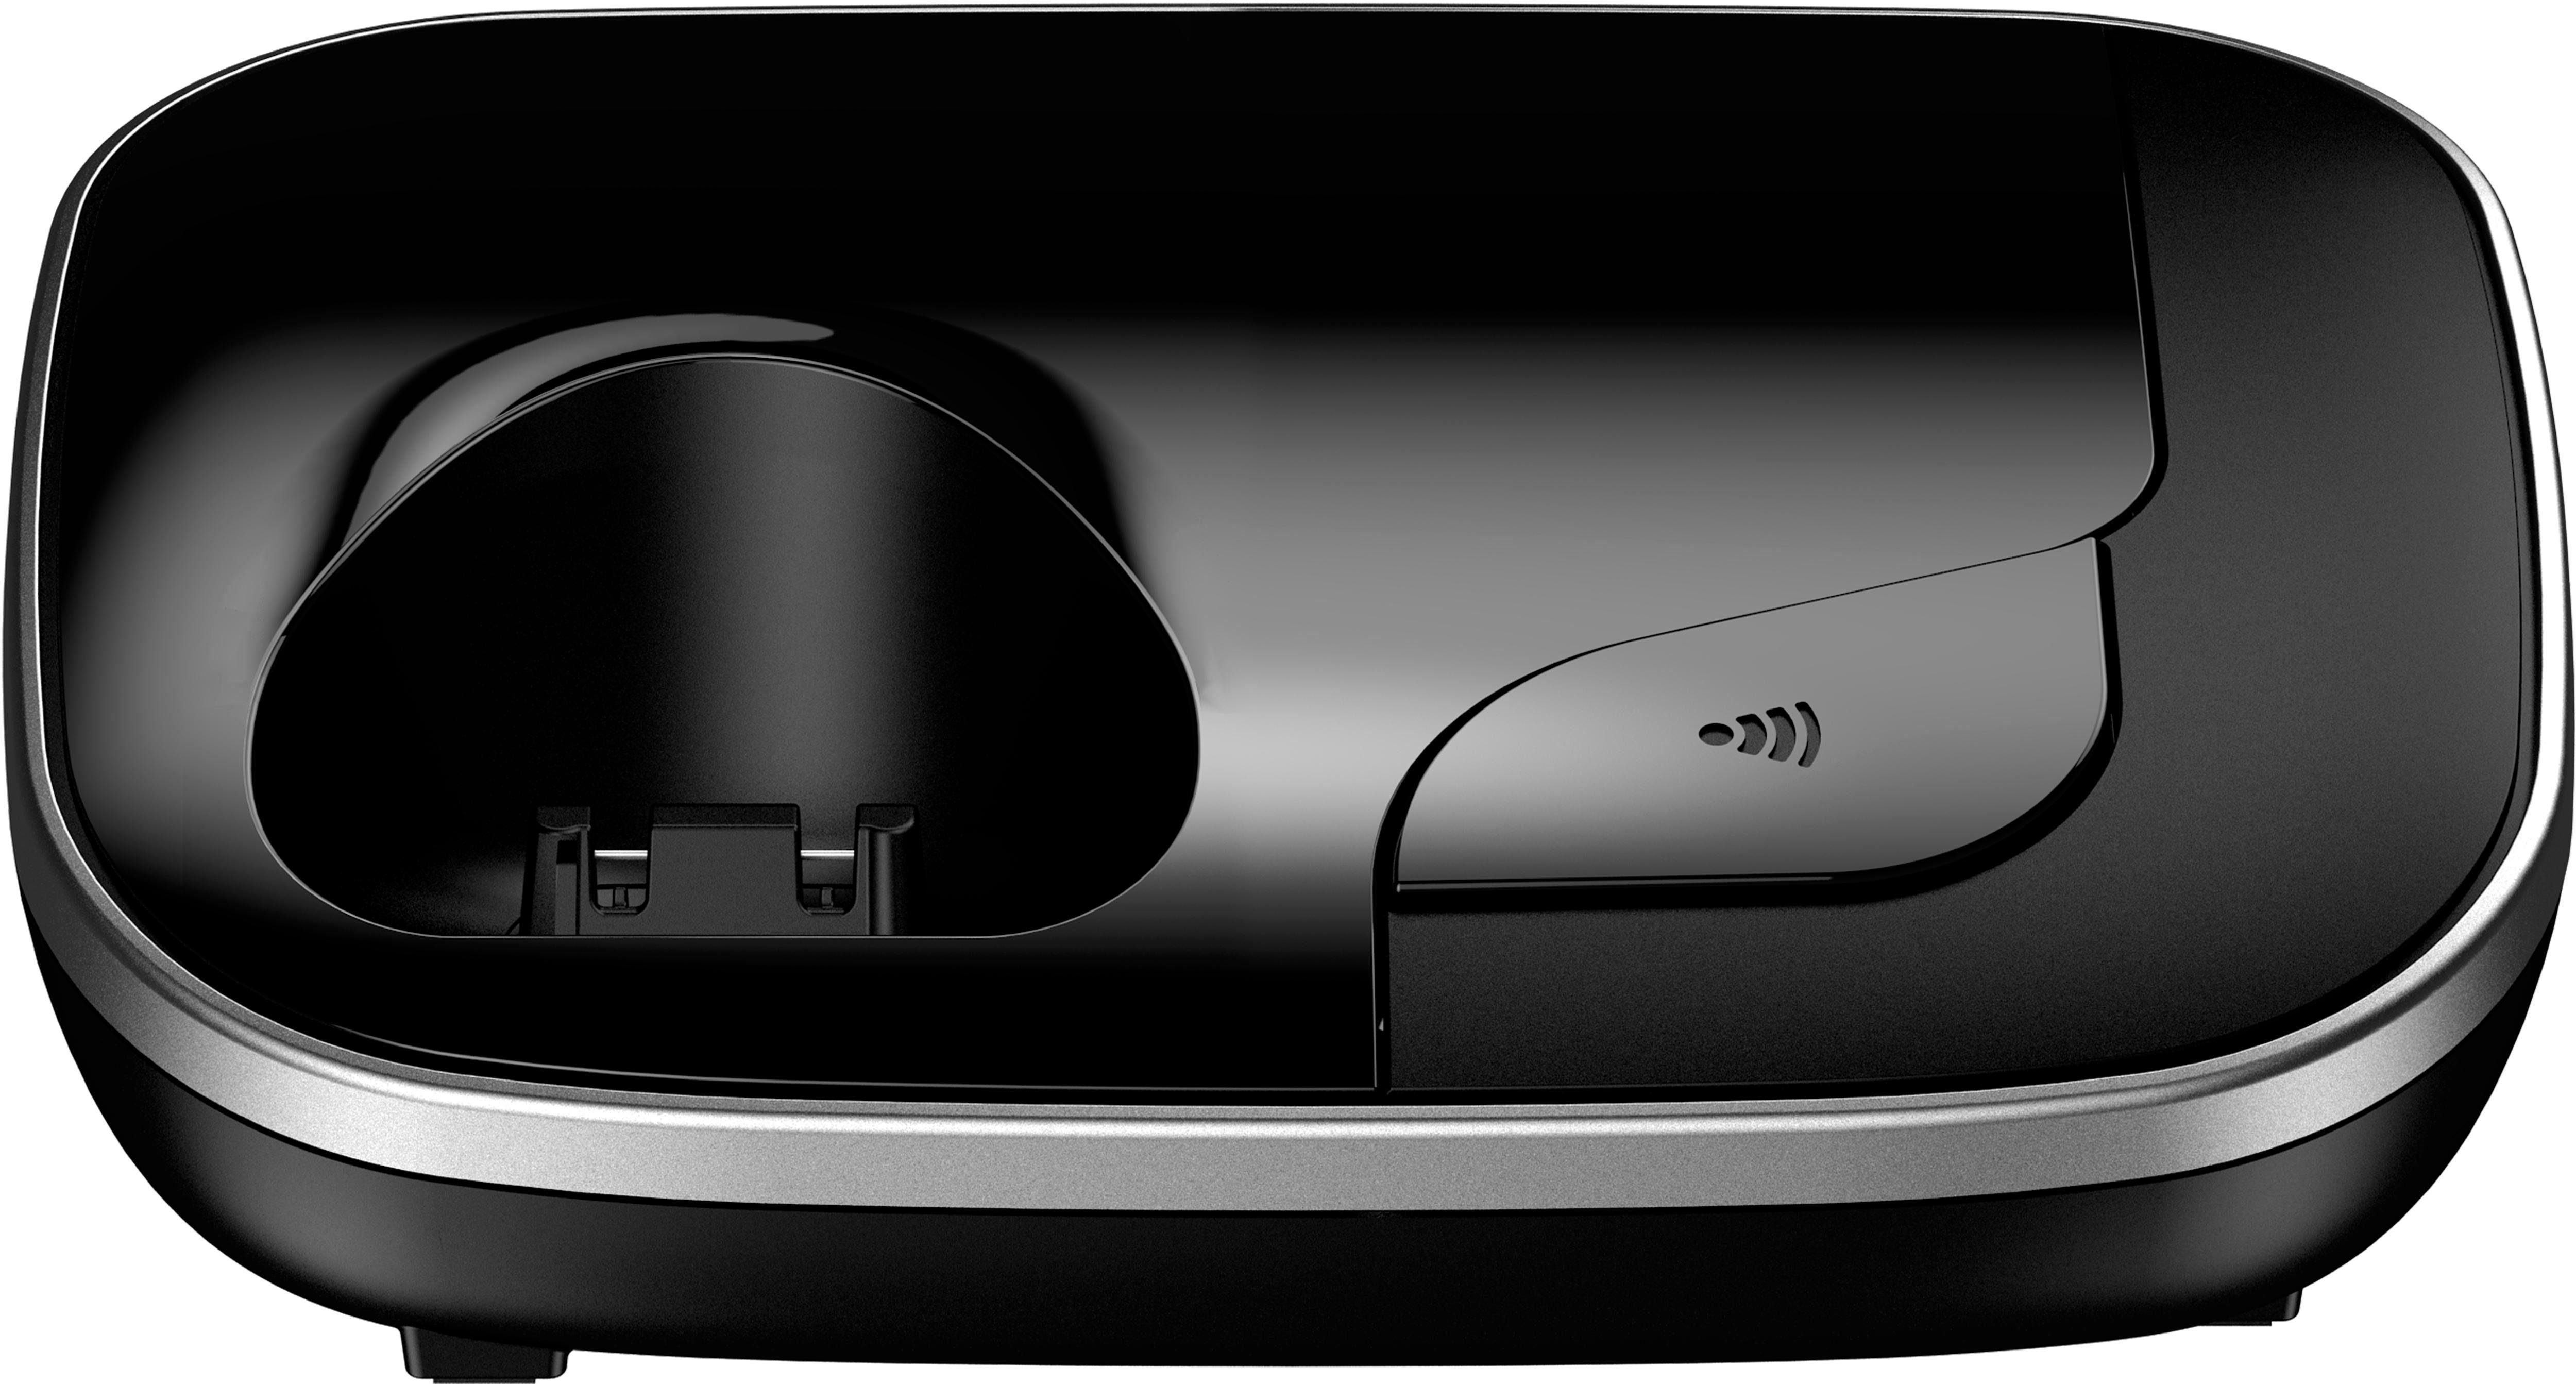 Schnurloses 1, schwarz Weckfunktion, KX-TGJ310 DECT-Telefon Panasonic Freisprechen) (Mobilteile: